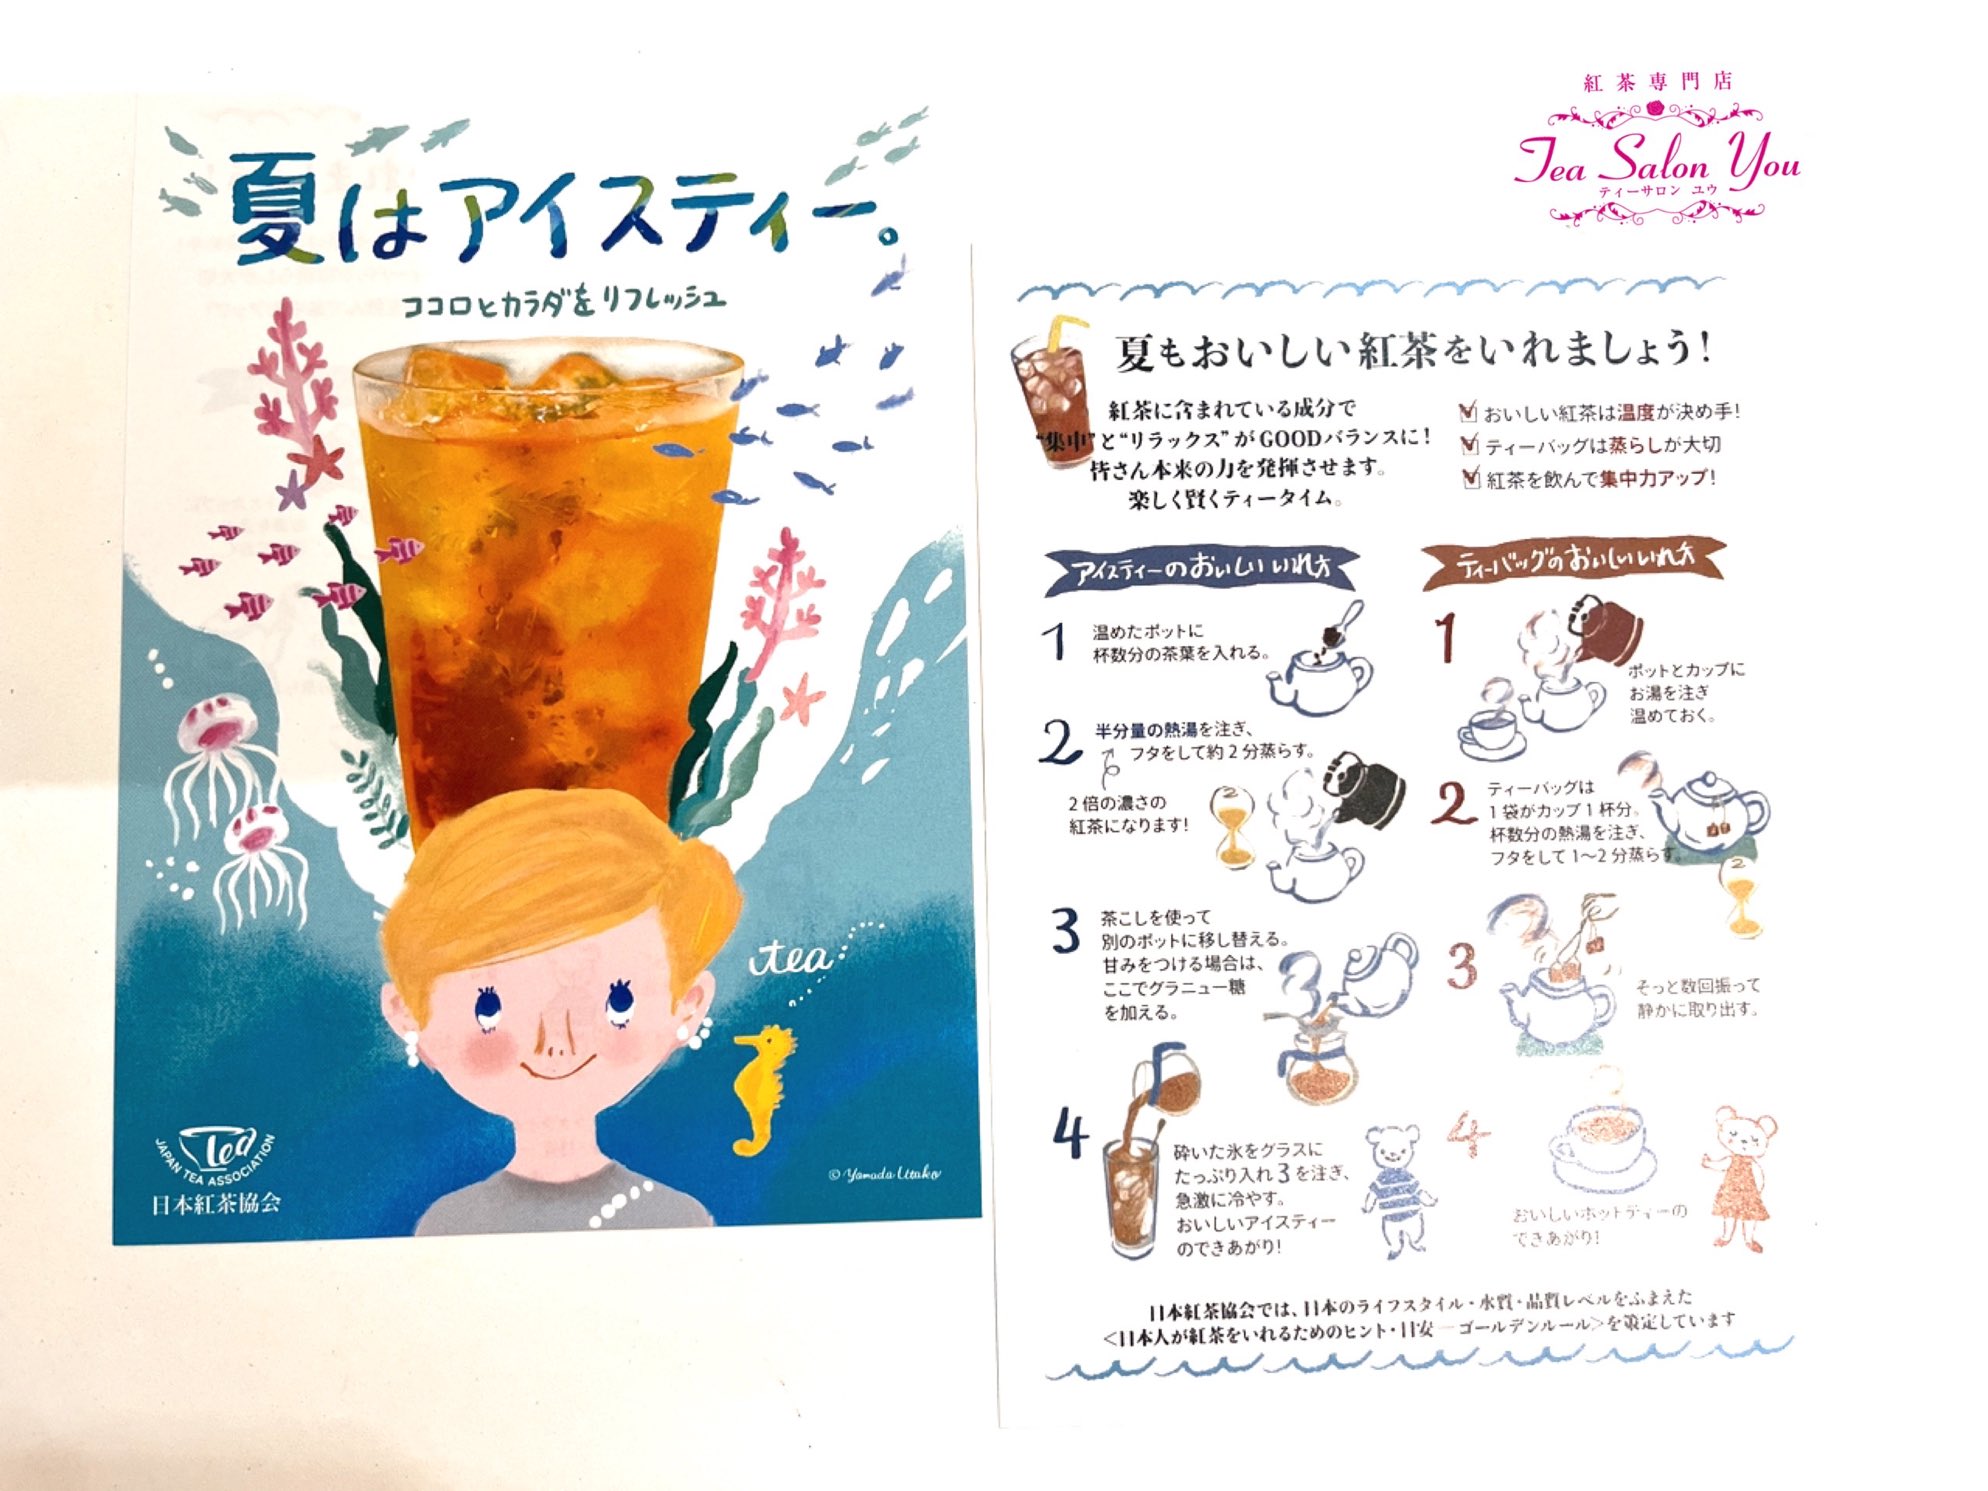 ティーサロン ユウ 日本紅茶協会から届いたチラシ イラスト可愛いです 裏は美味しい紅茶の淹れ方が書いてあります カウンターに置きましたので ご自由にお持ちくださいね T Co Se086jzomf Twitter